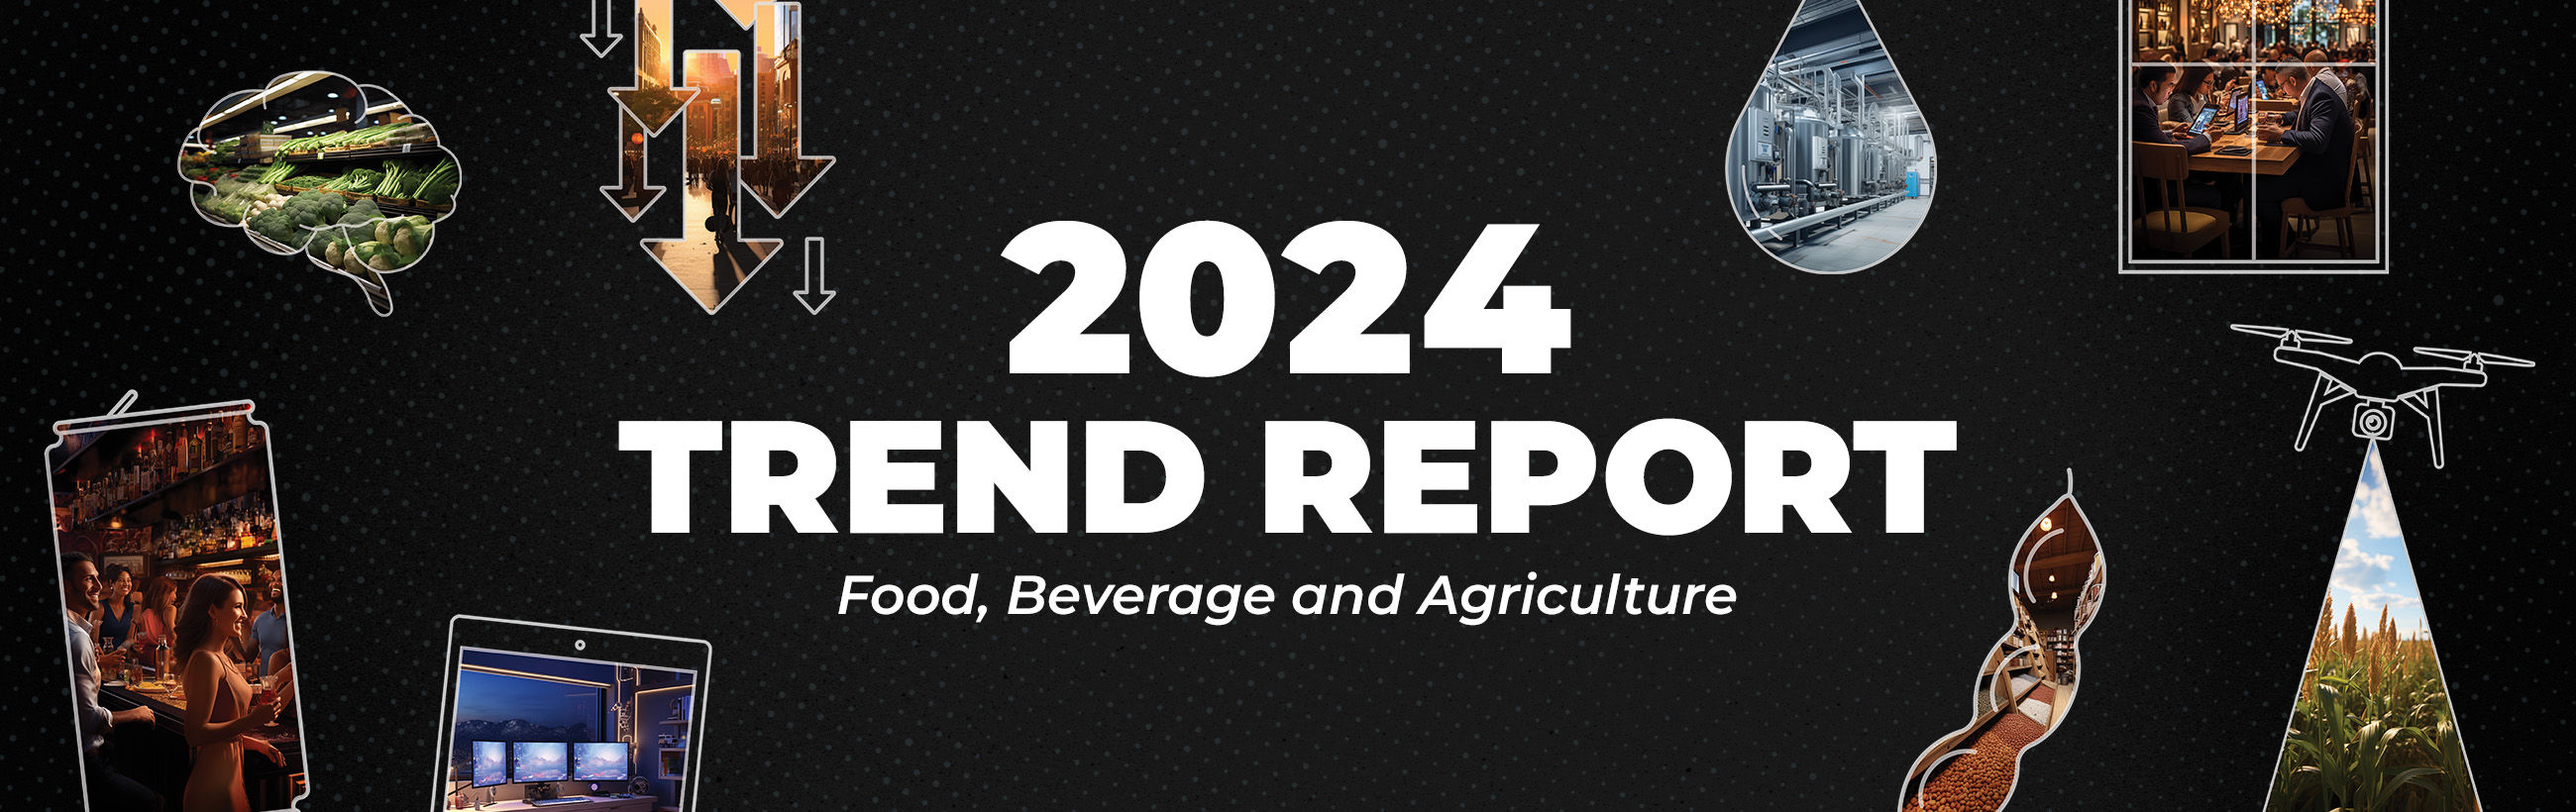 2024 Trend Report banner